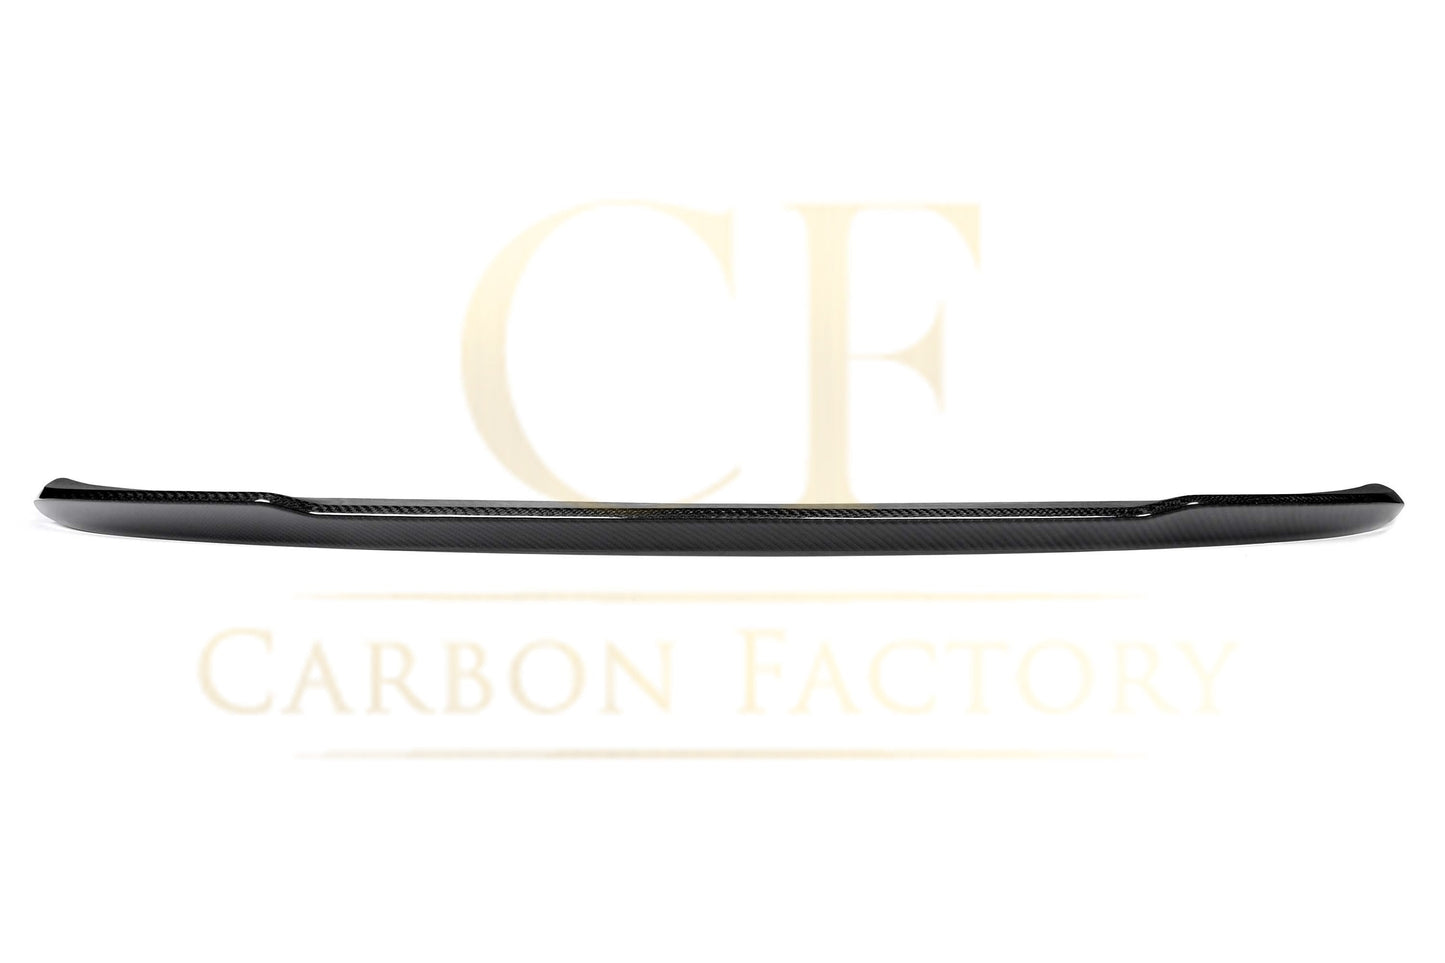 BMW F82 M4 Coupe CS Style Pre-preg Carbon Fibre Boot Spoiler 14-20-Carbon Factory